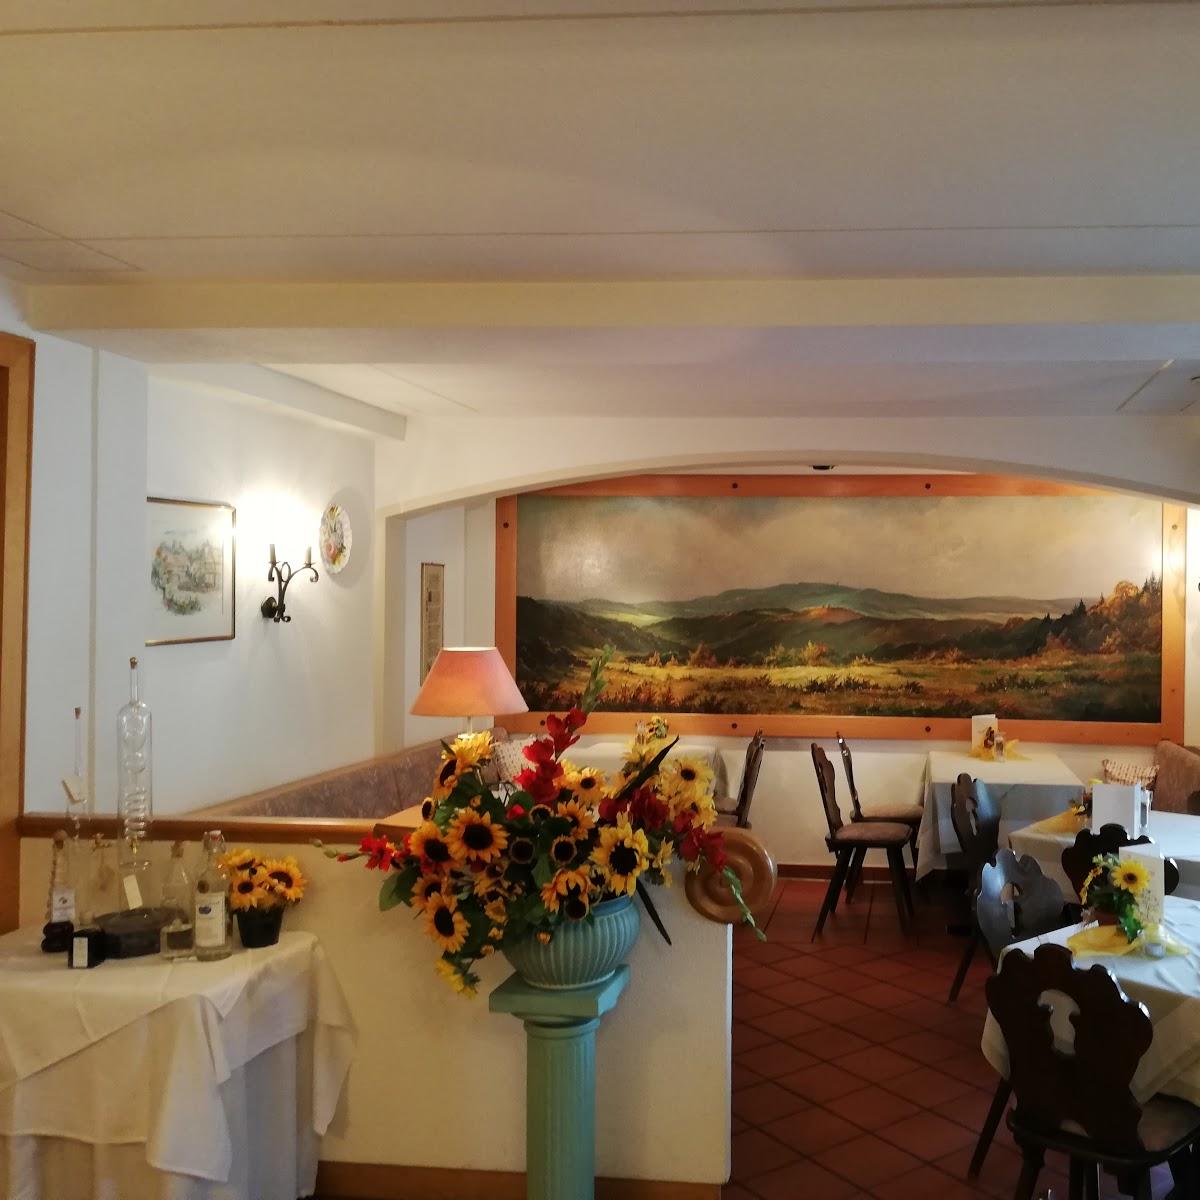 Restaurant "Landgasthof zur Linde" in  Weilrod